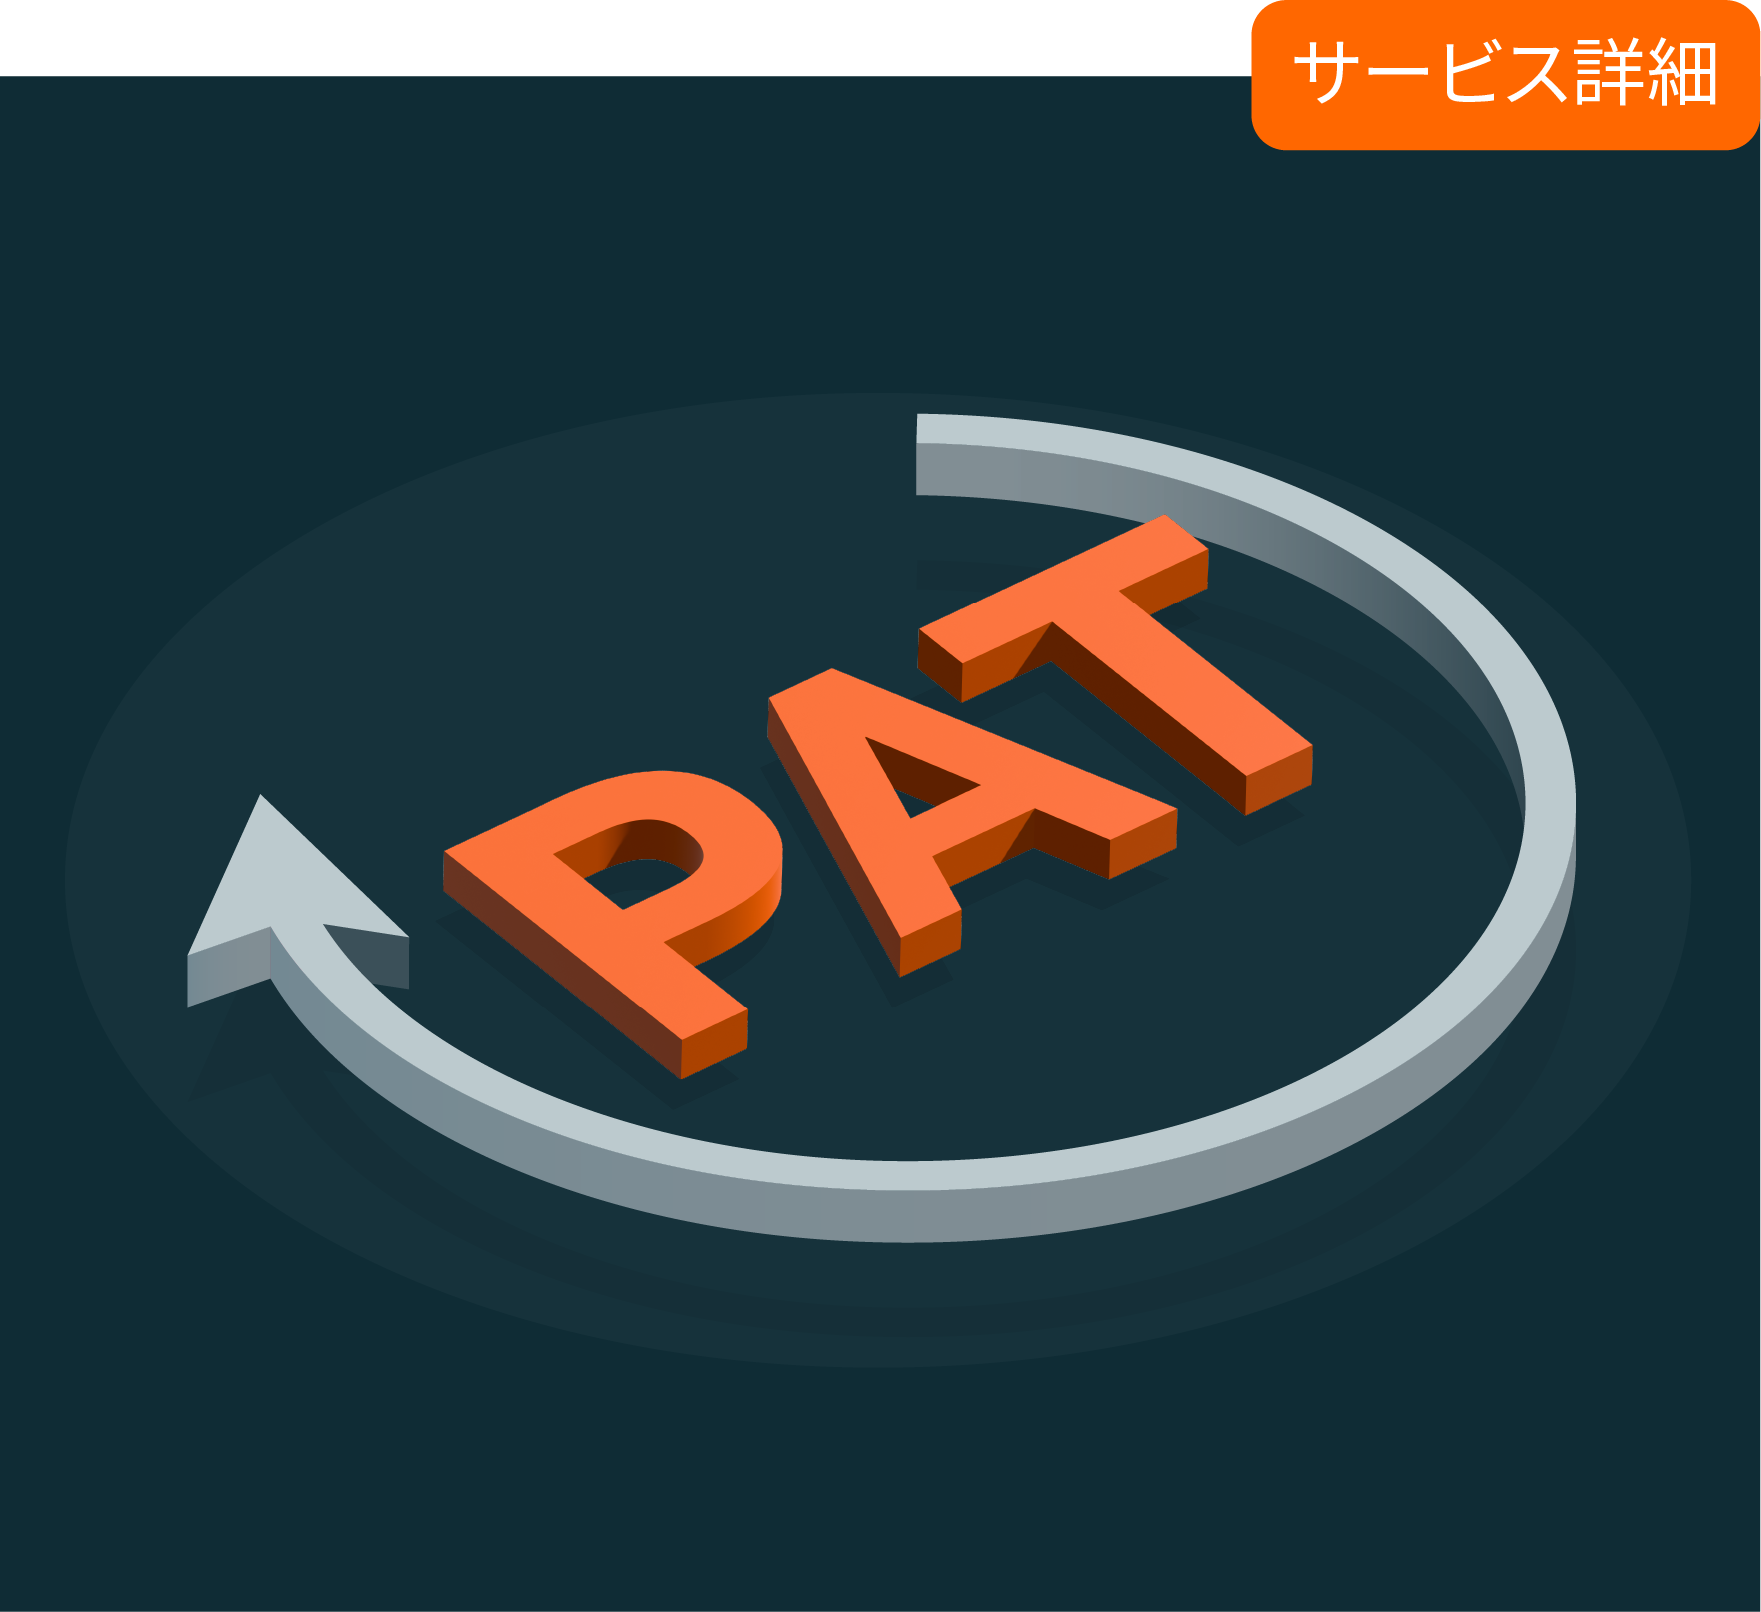 renewals-services_patent-details_cn_jp